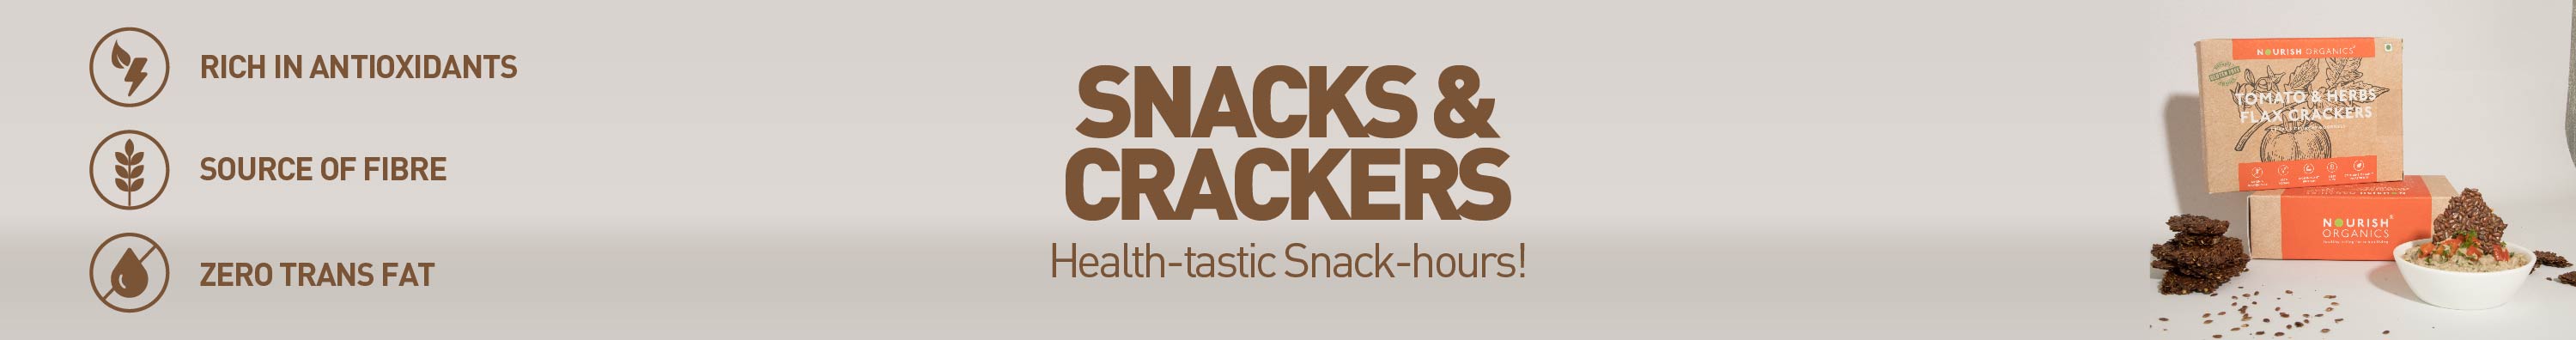 Snacks & Crackers